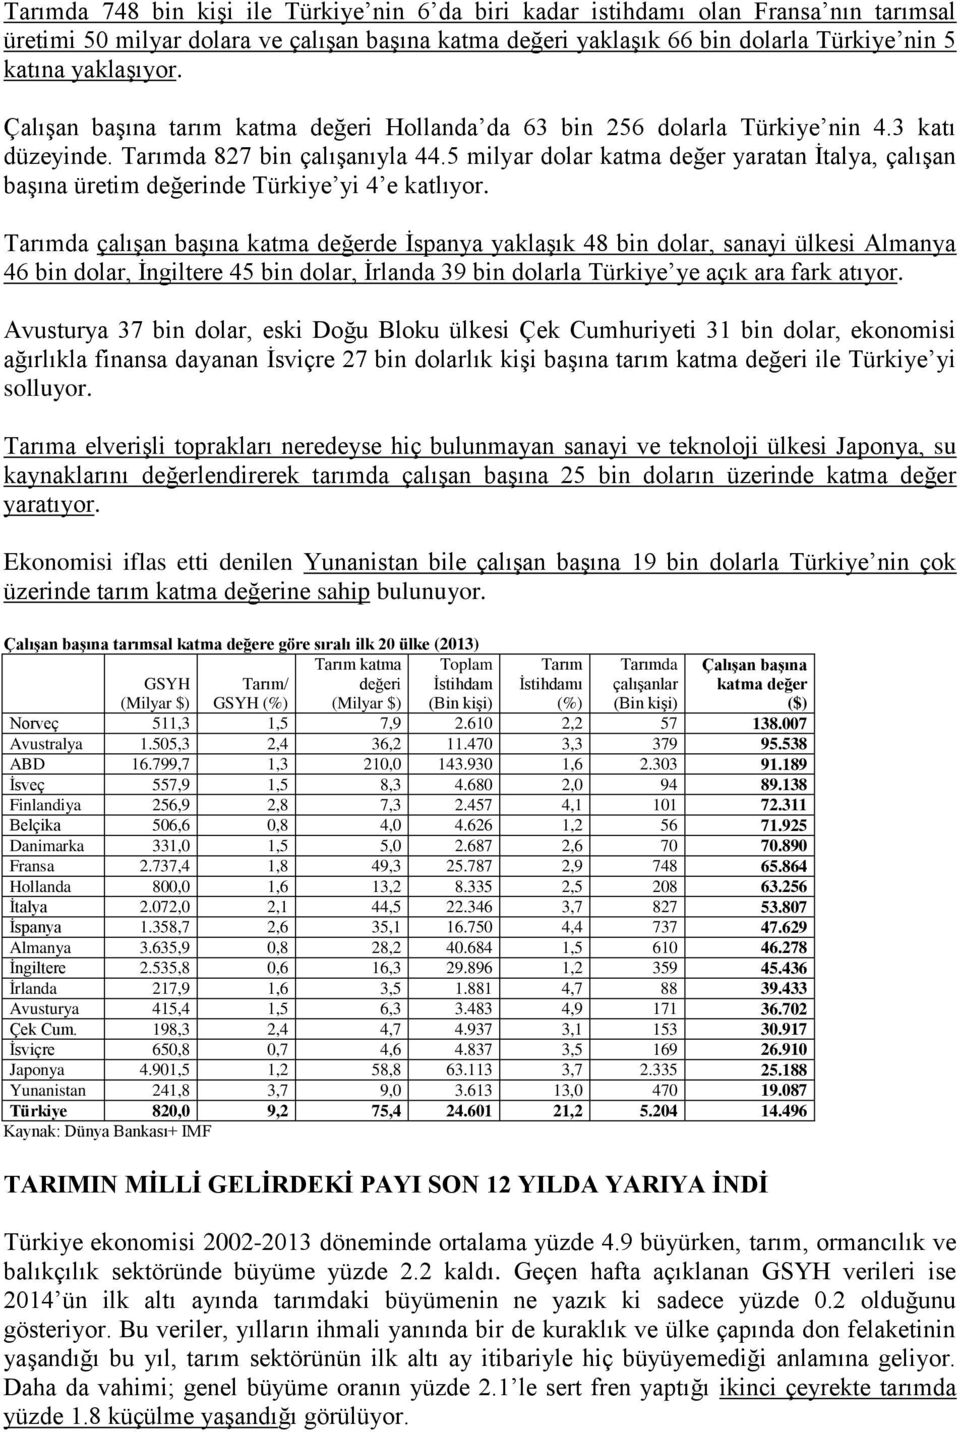 5 milyar dolar katma değer yaratan İtalya, çalışan başına üretim değerinde Türkiye yi 4 e katlıyor.